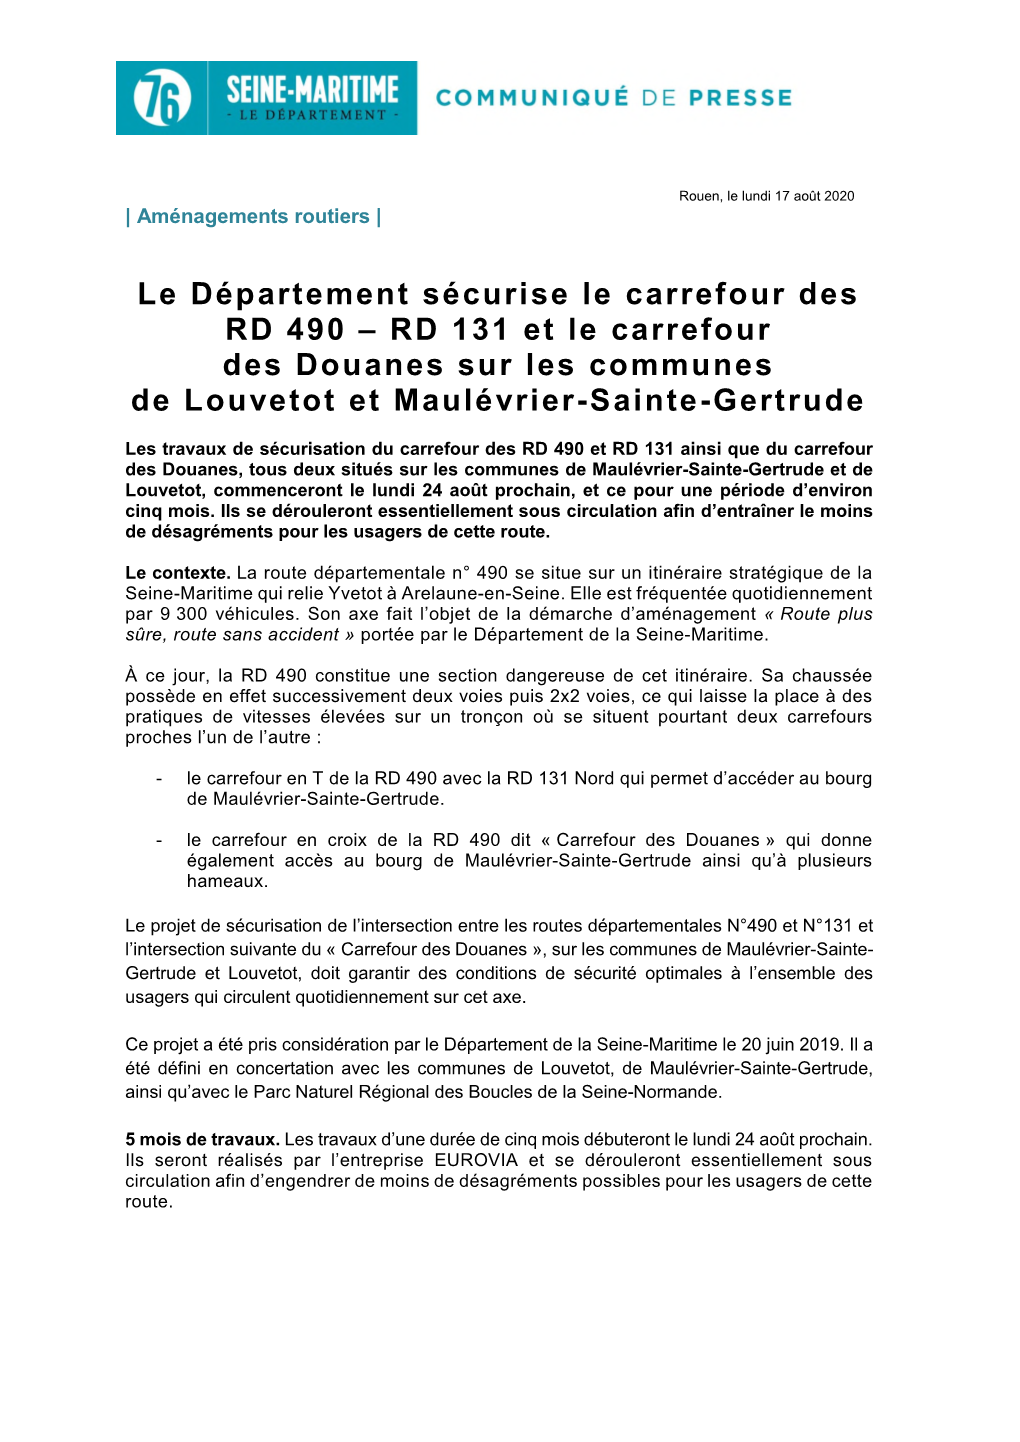 Le Département Sécurise Le Carrefour Des RD 490 – RD 131 Et Le Carrefour Des Douanes Sur Les Communes De Louvetot Et Maulévrier-Sainte-Gertrude